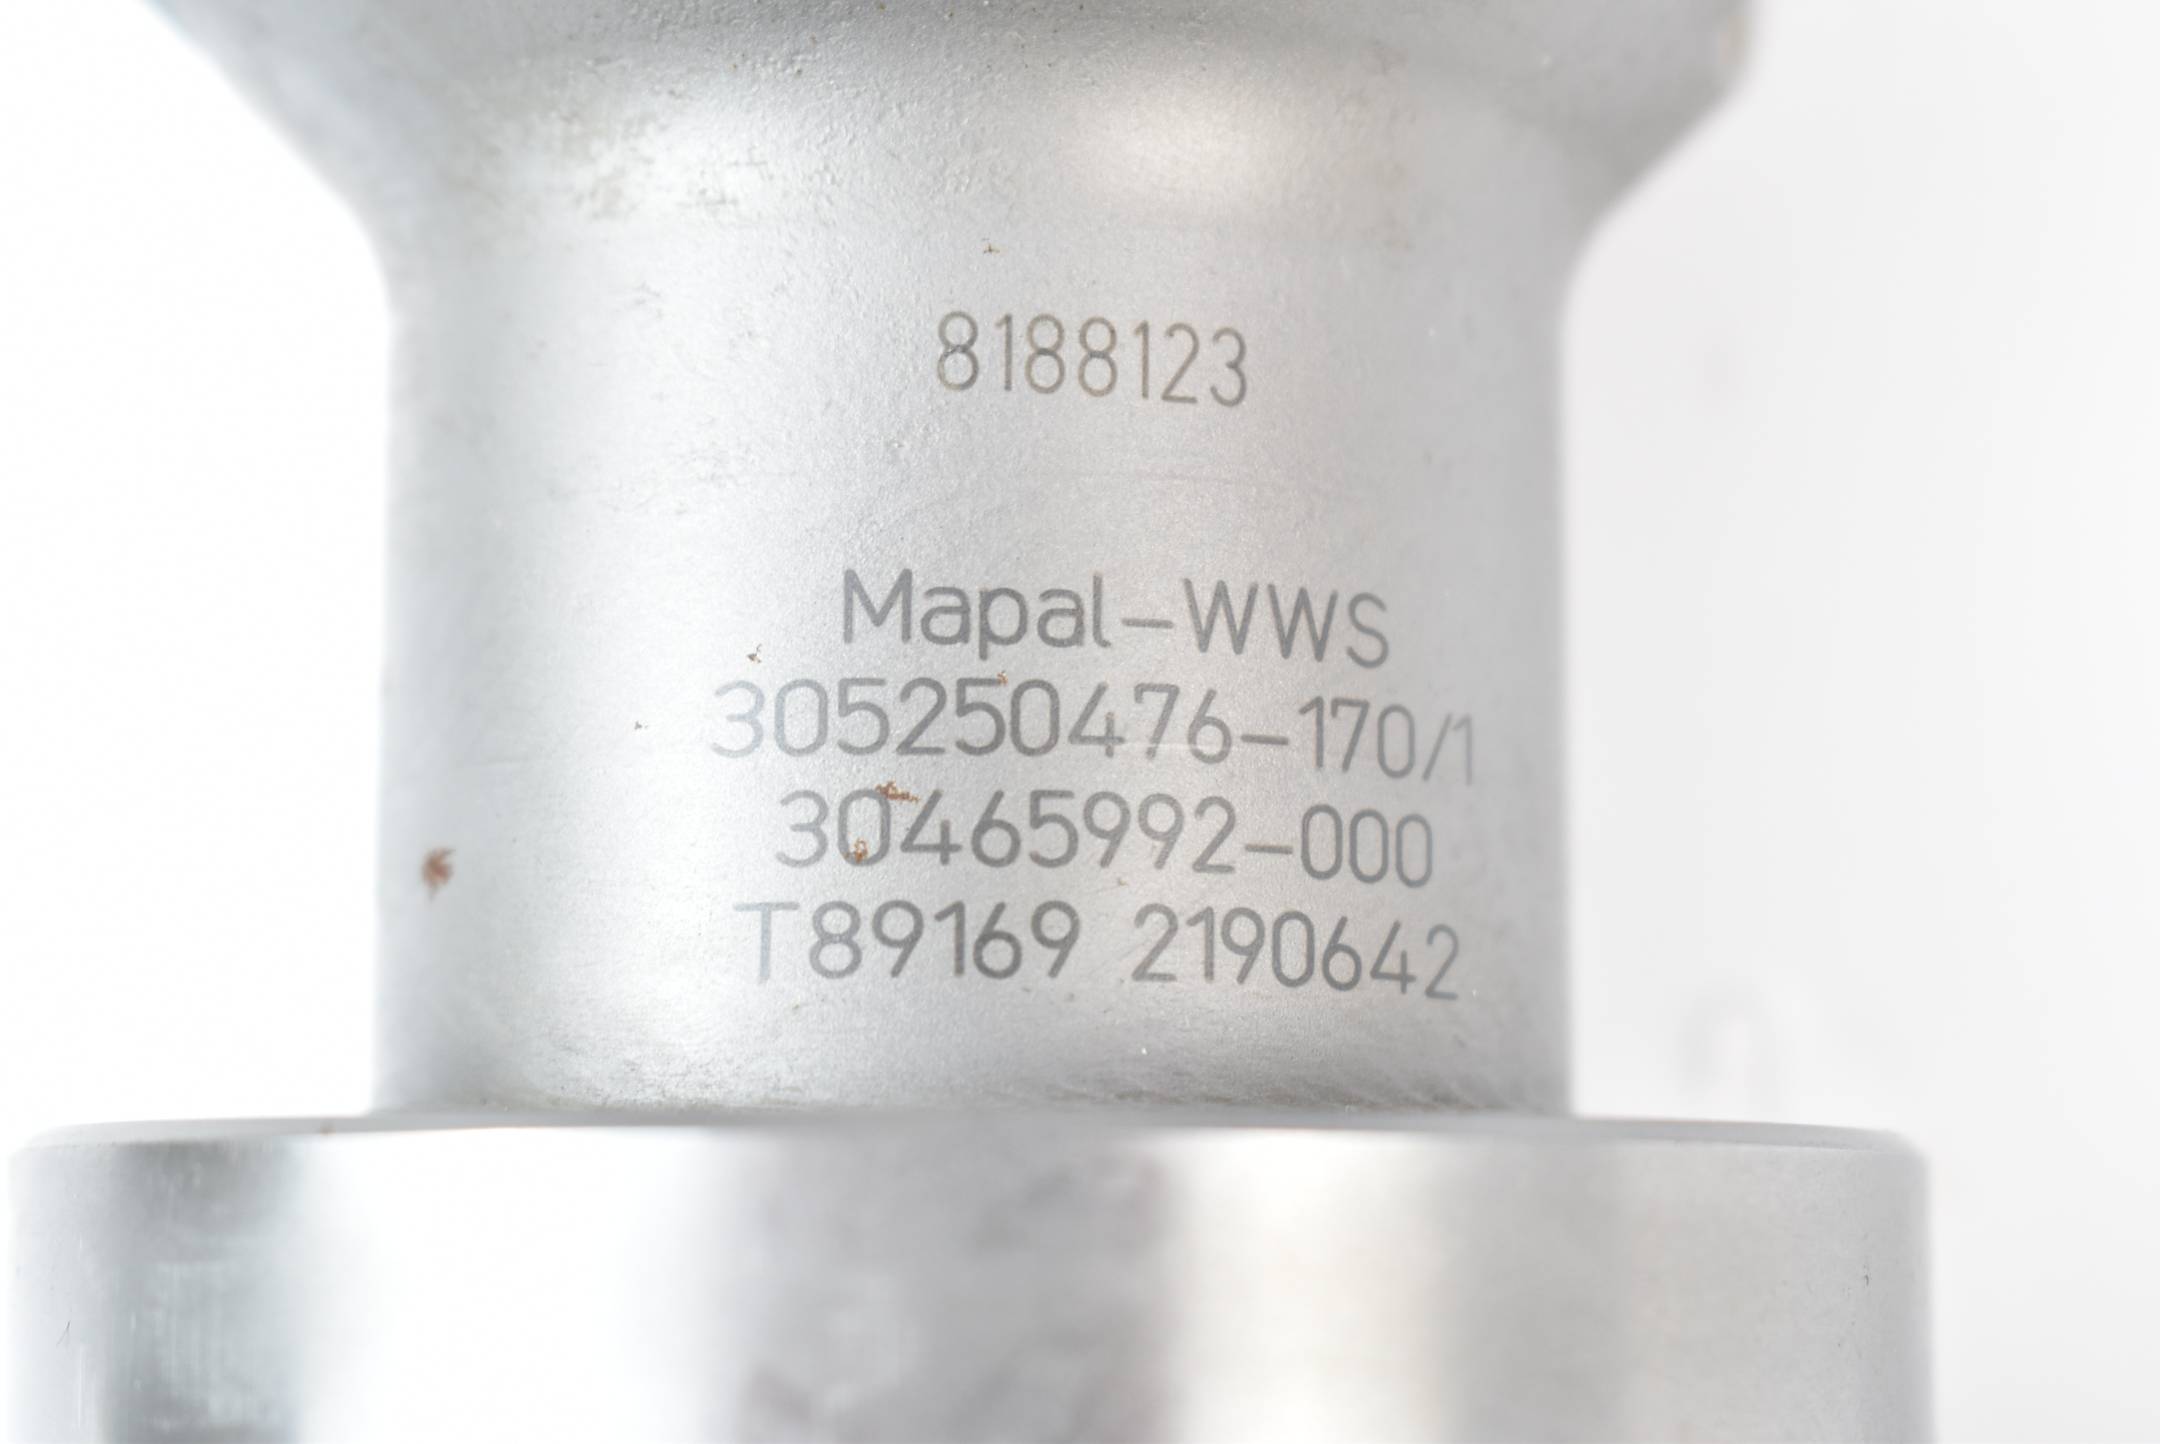 Mapal-WWS 305250476-170/1 ( 30465992-000 ) 2190642 T89169 inkl. MN5092-08-K